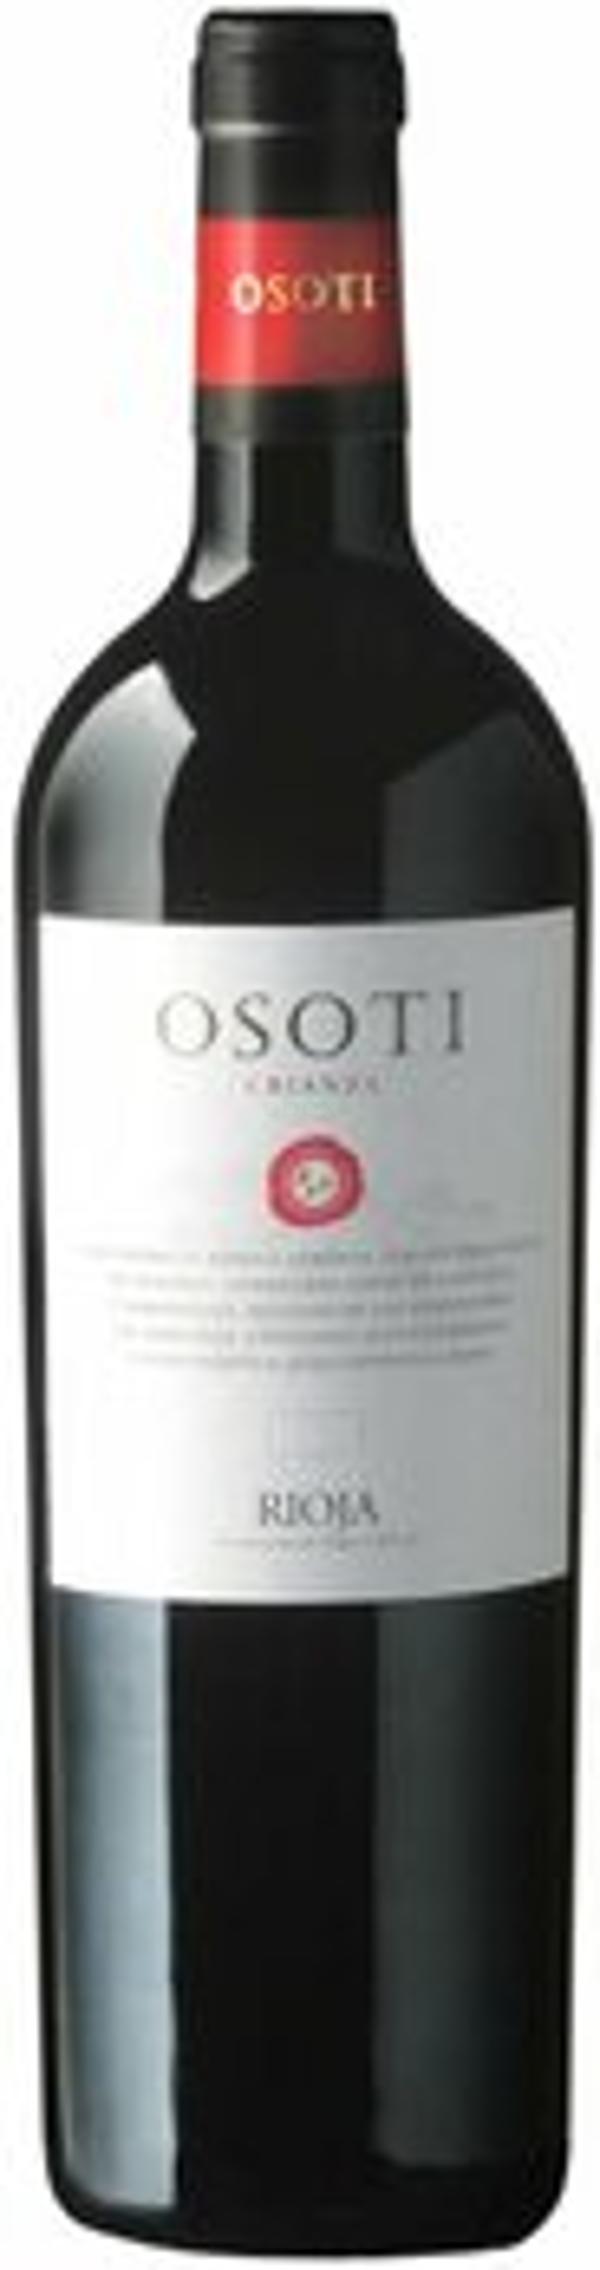 Produktfoto zu Rioja Osoti Crianza Tinto, Rotwein trocken 0,75l